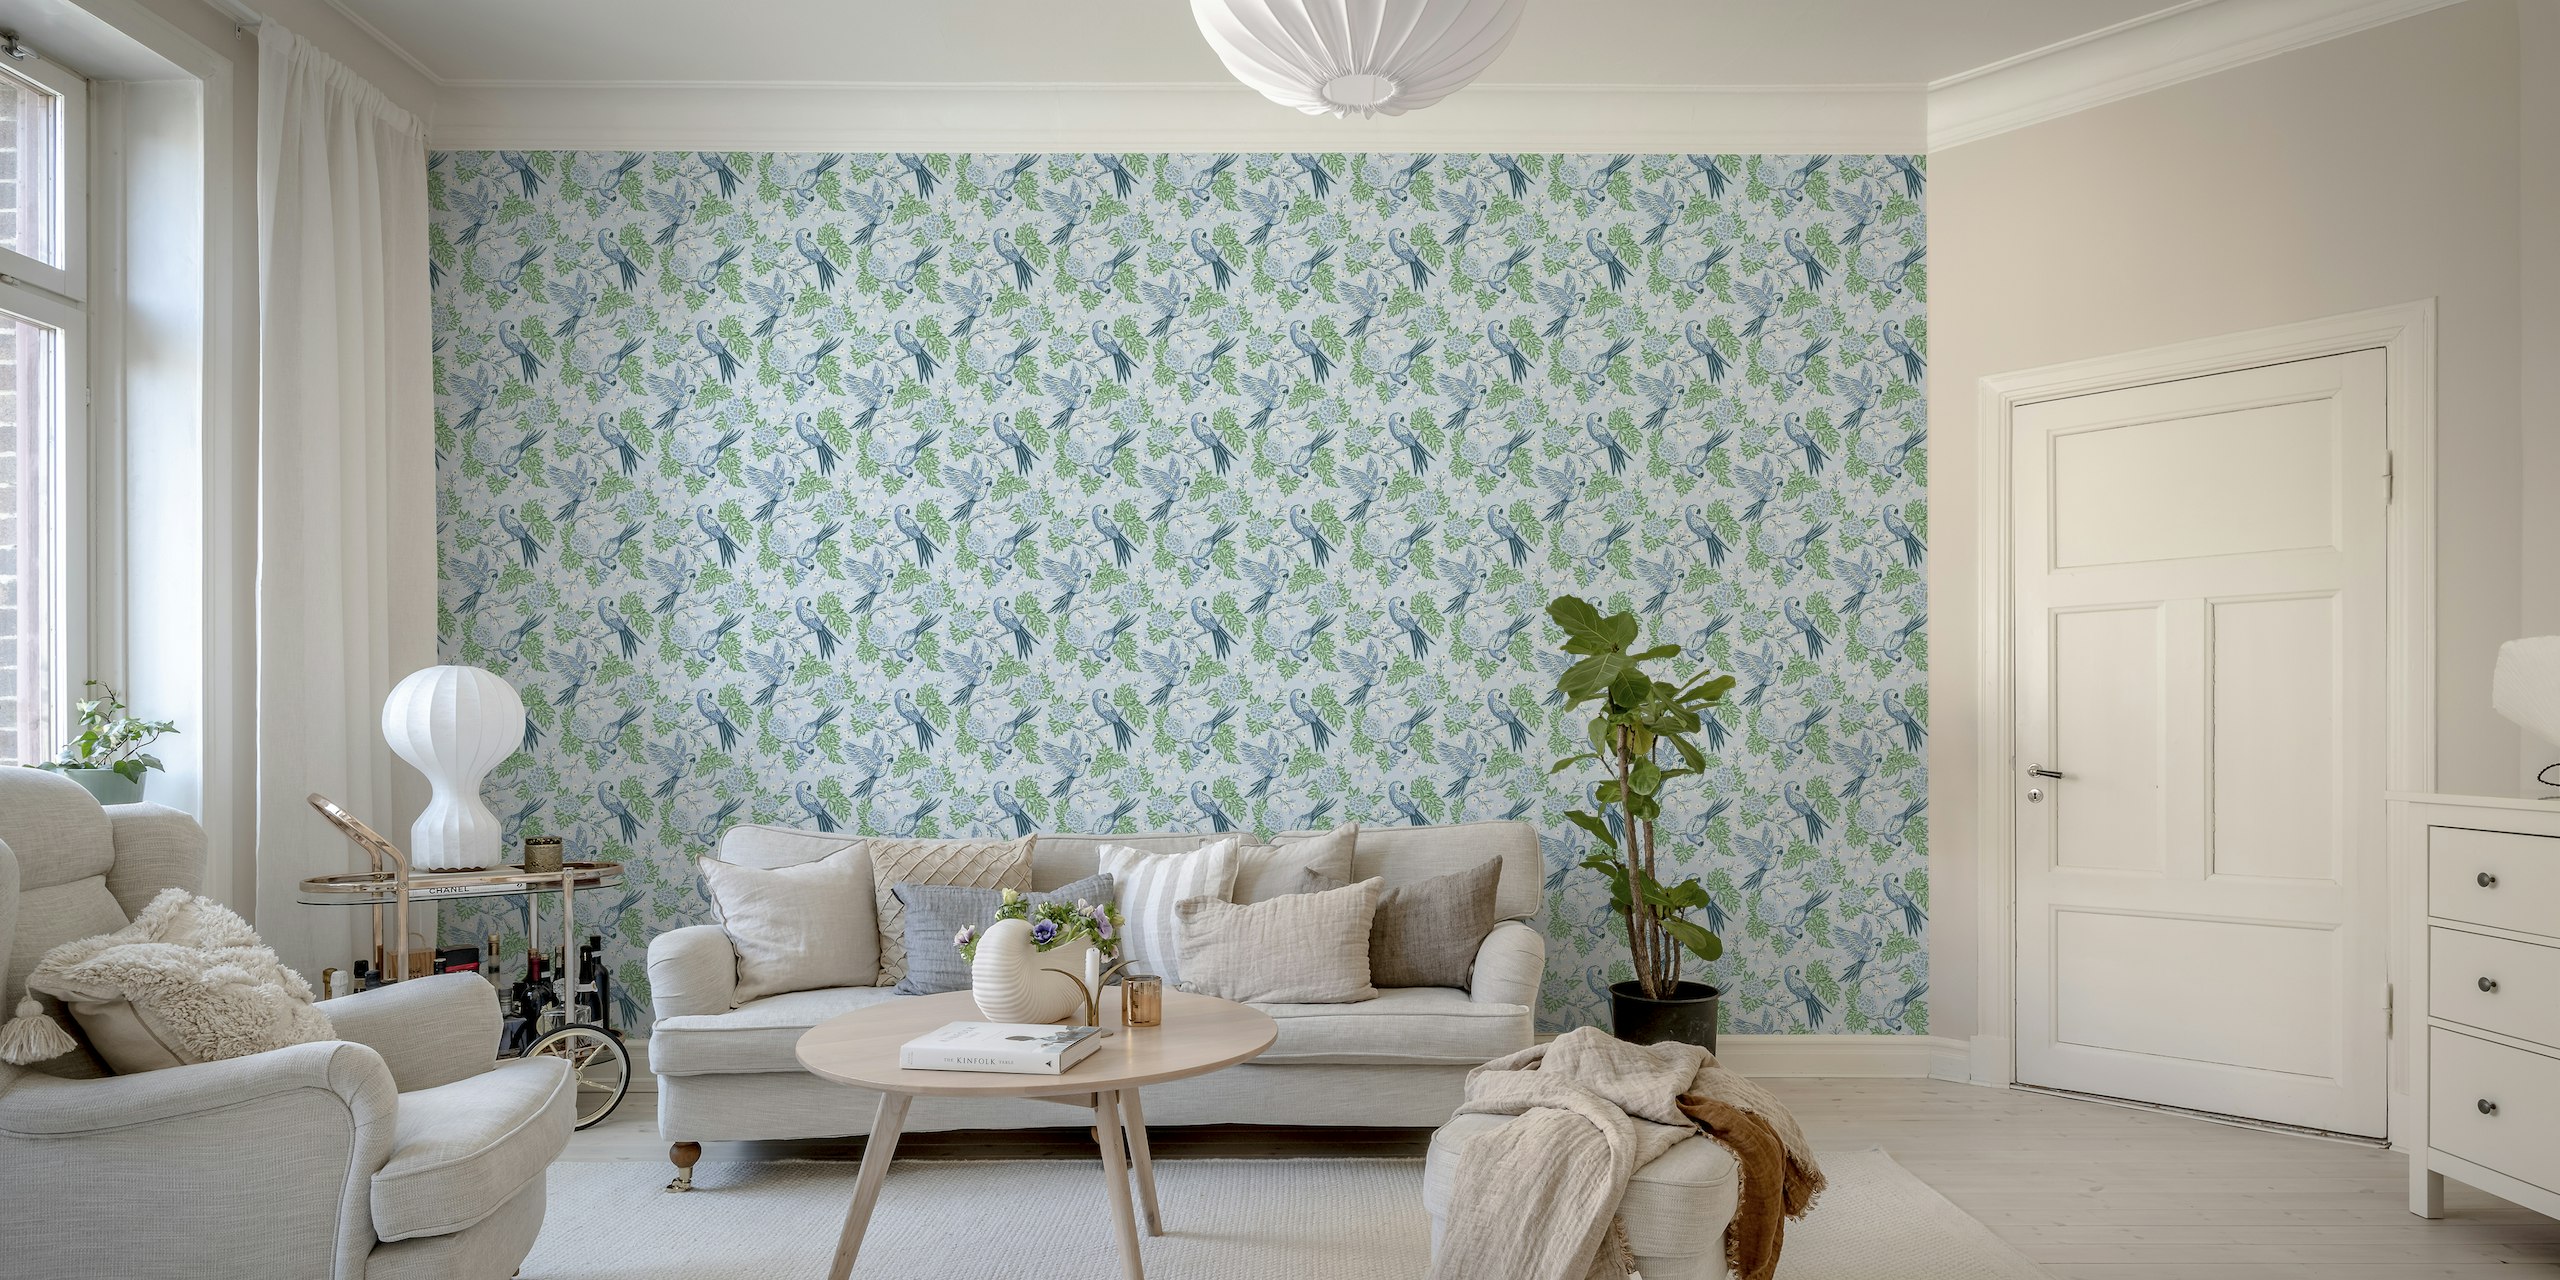 Parrot garden - blue and green wallpaper